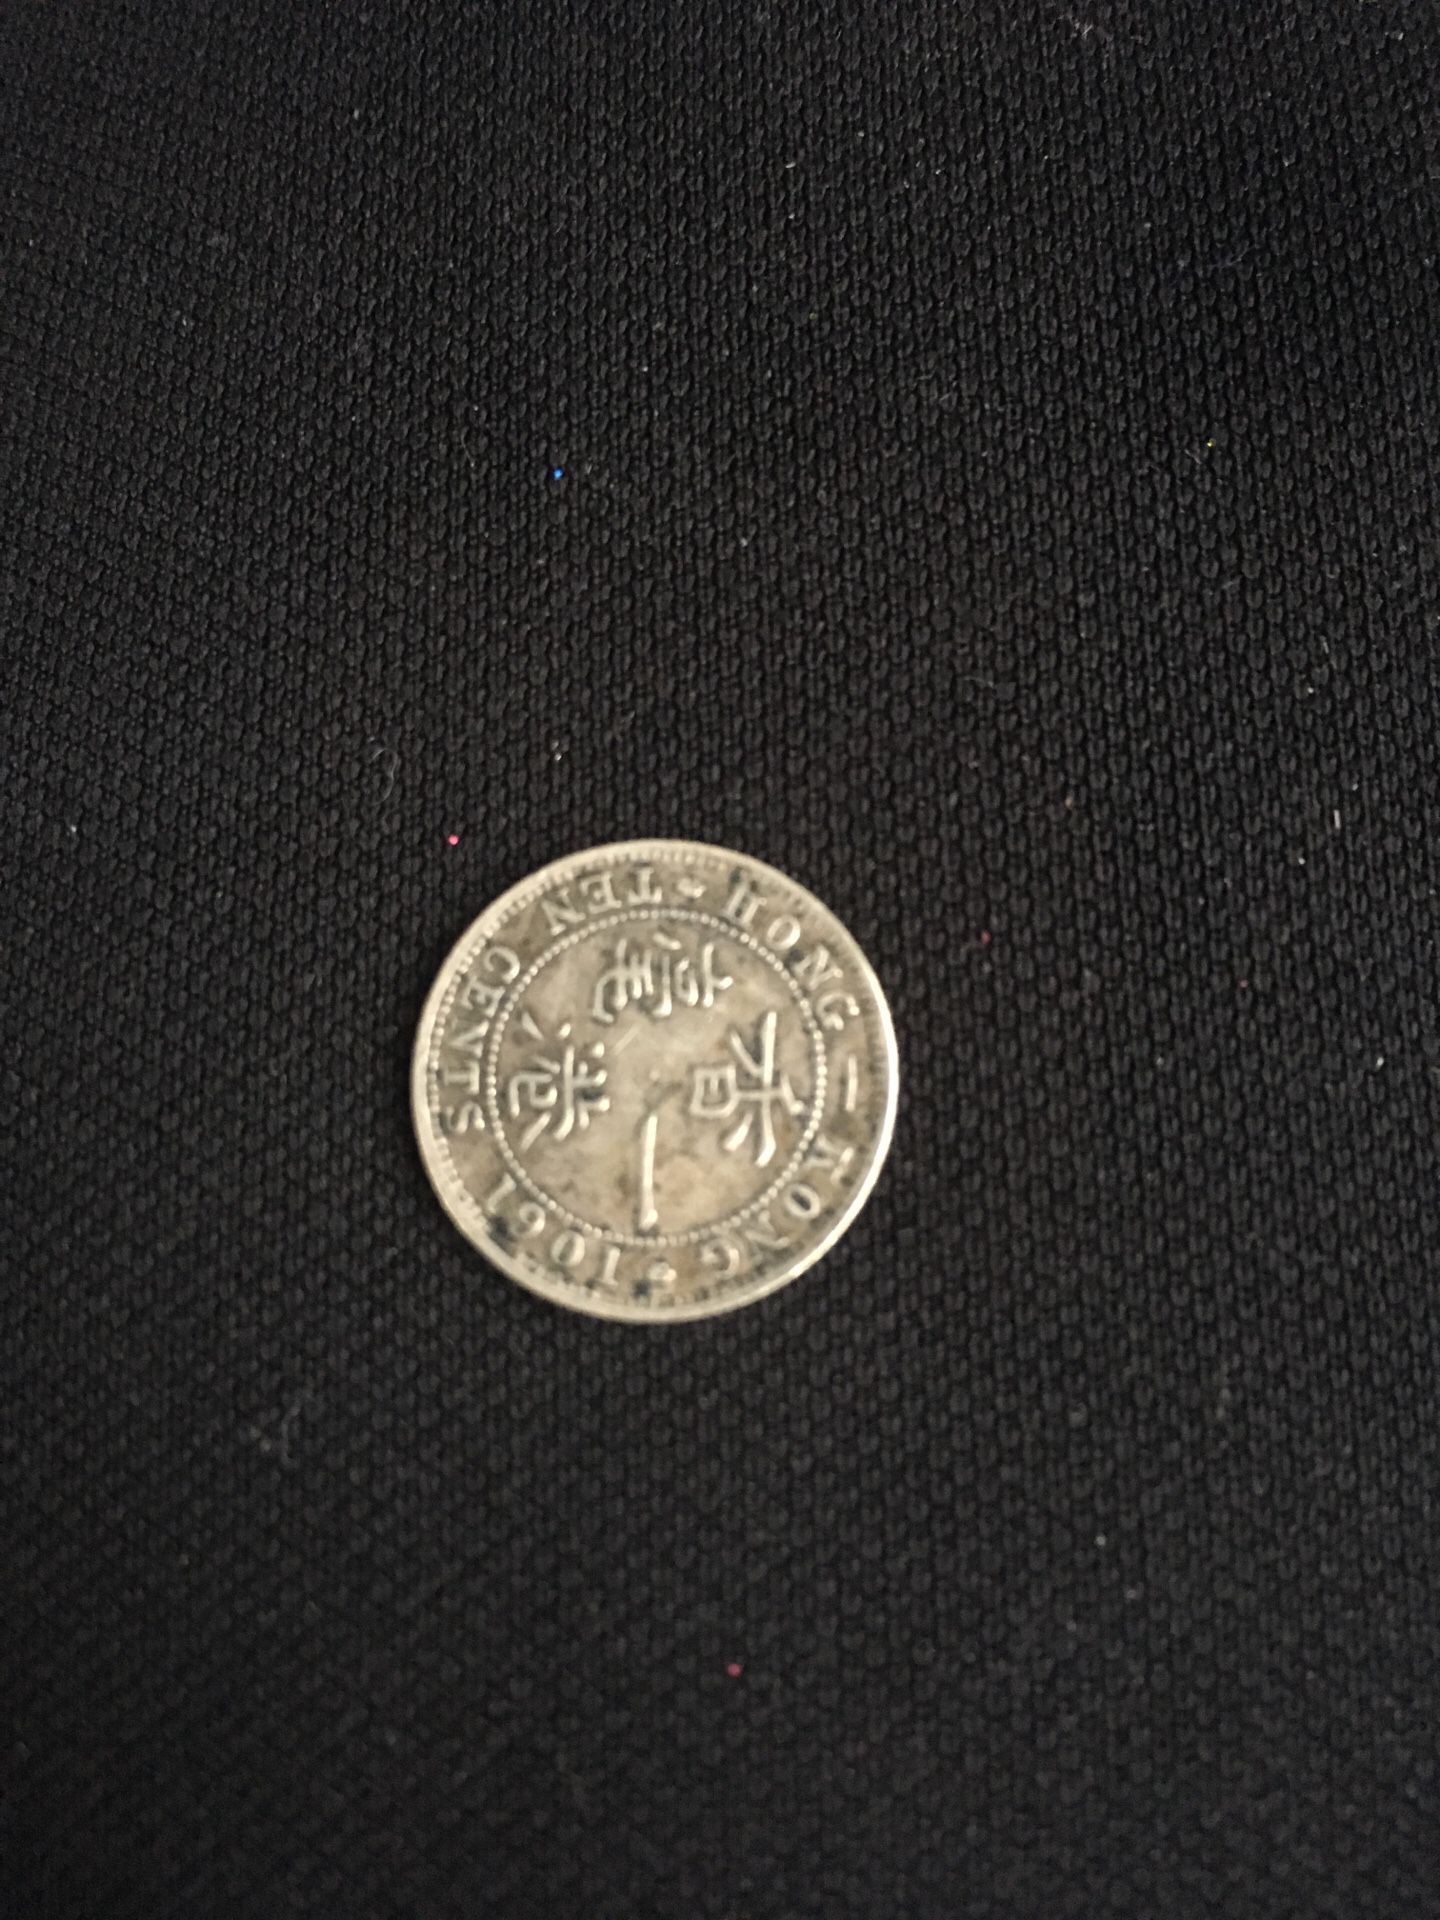 1901 Hong Kong 10 cents